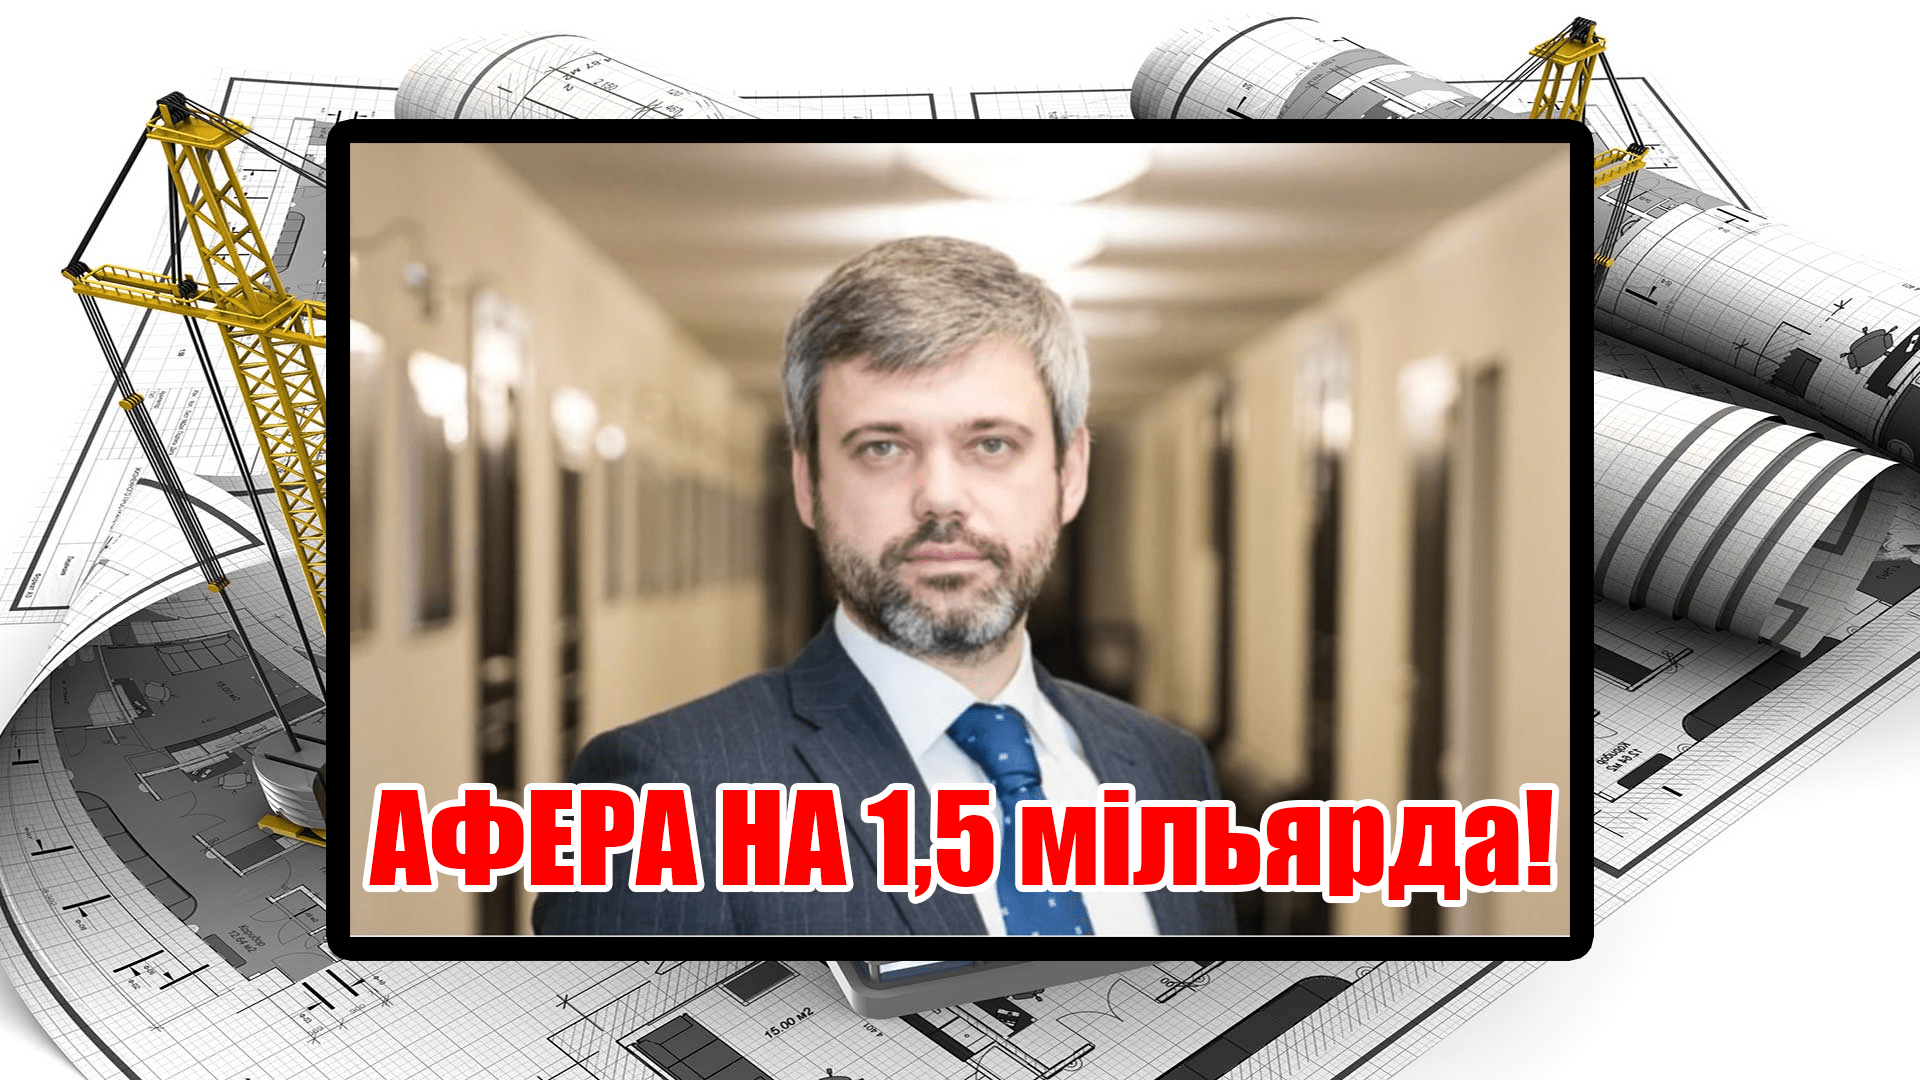 Петро Оленич аферист українофоб вкрав у Киян 1,5 млрд